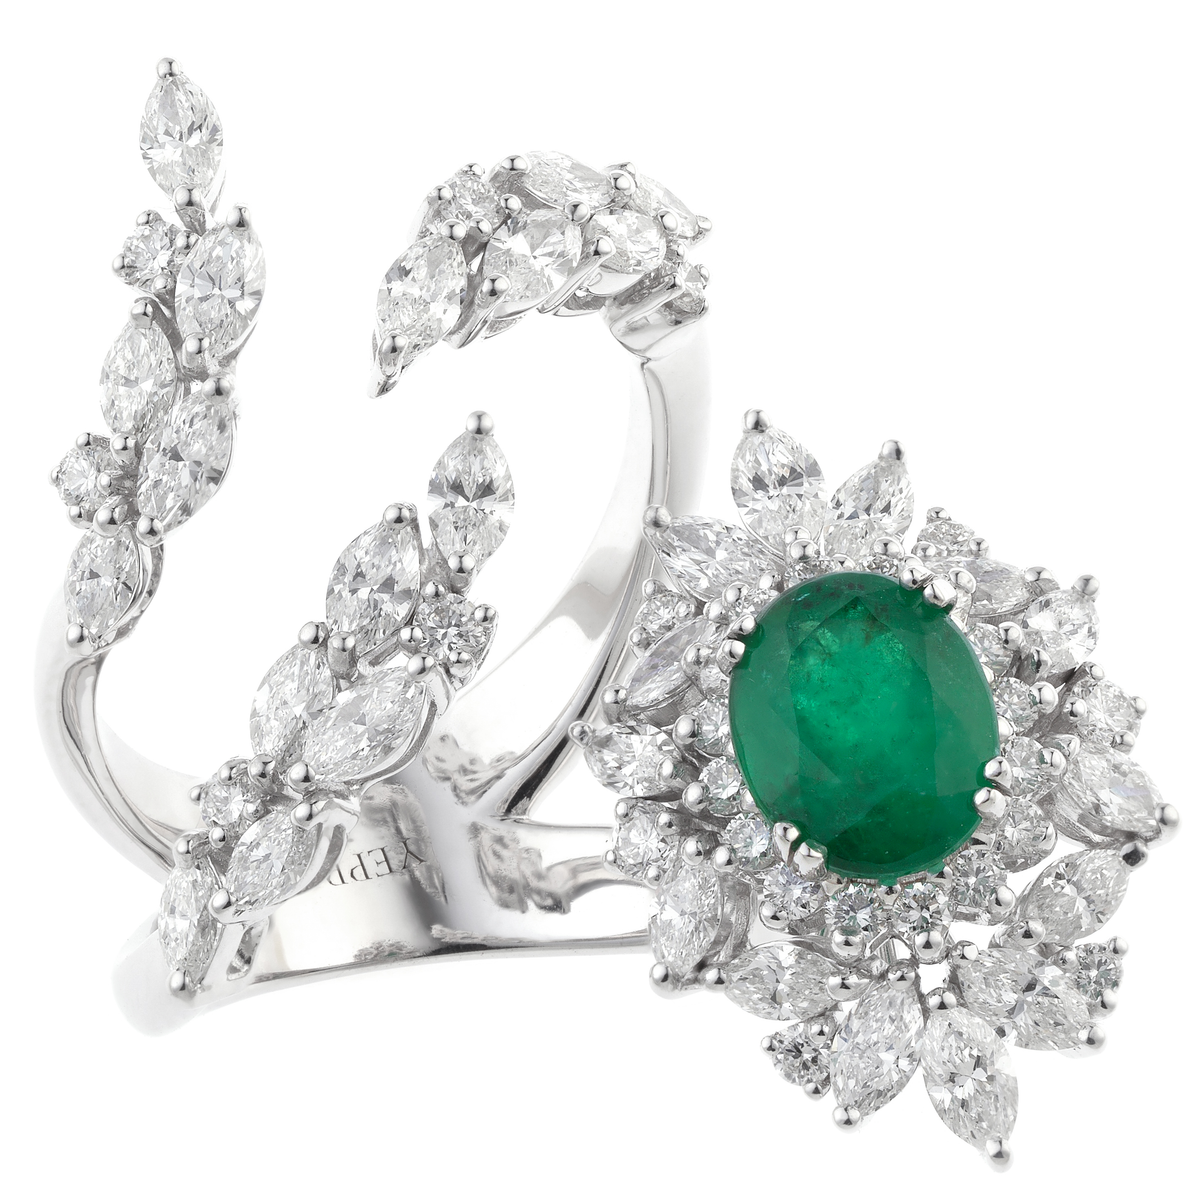 Green Emerald Centre Stone Ring